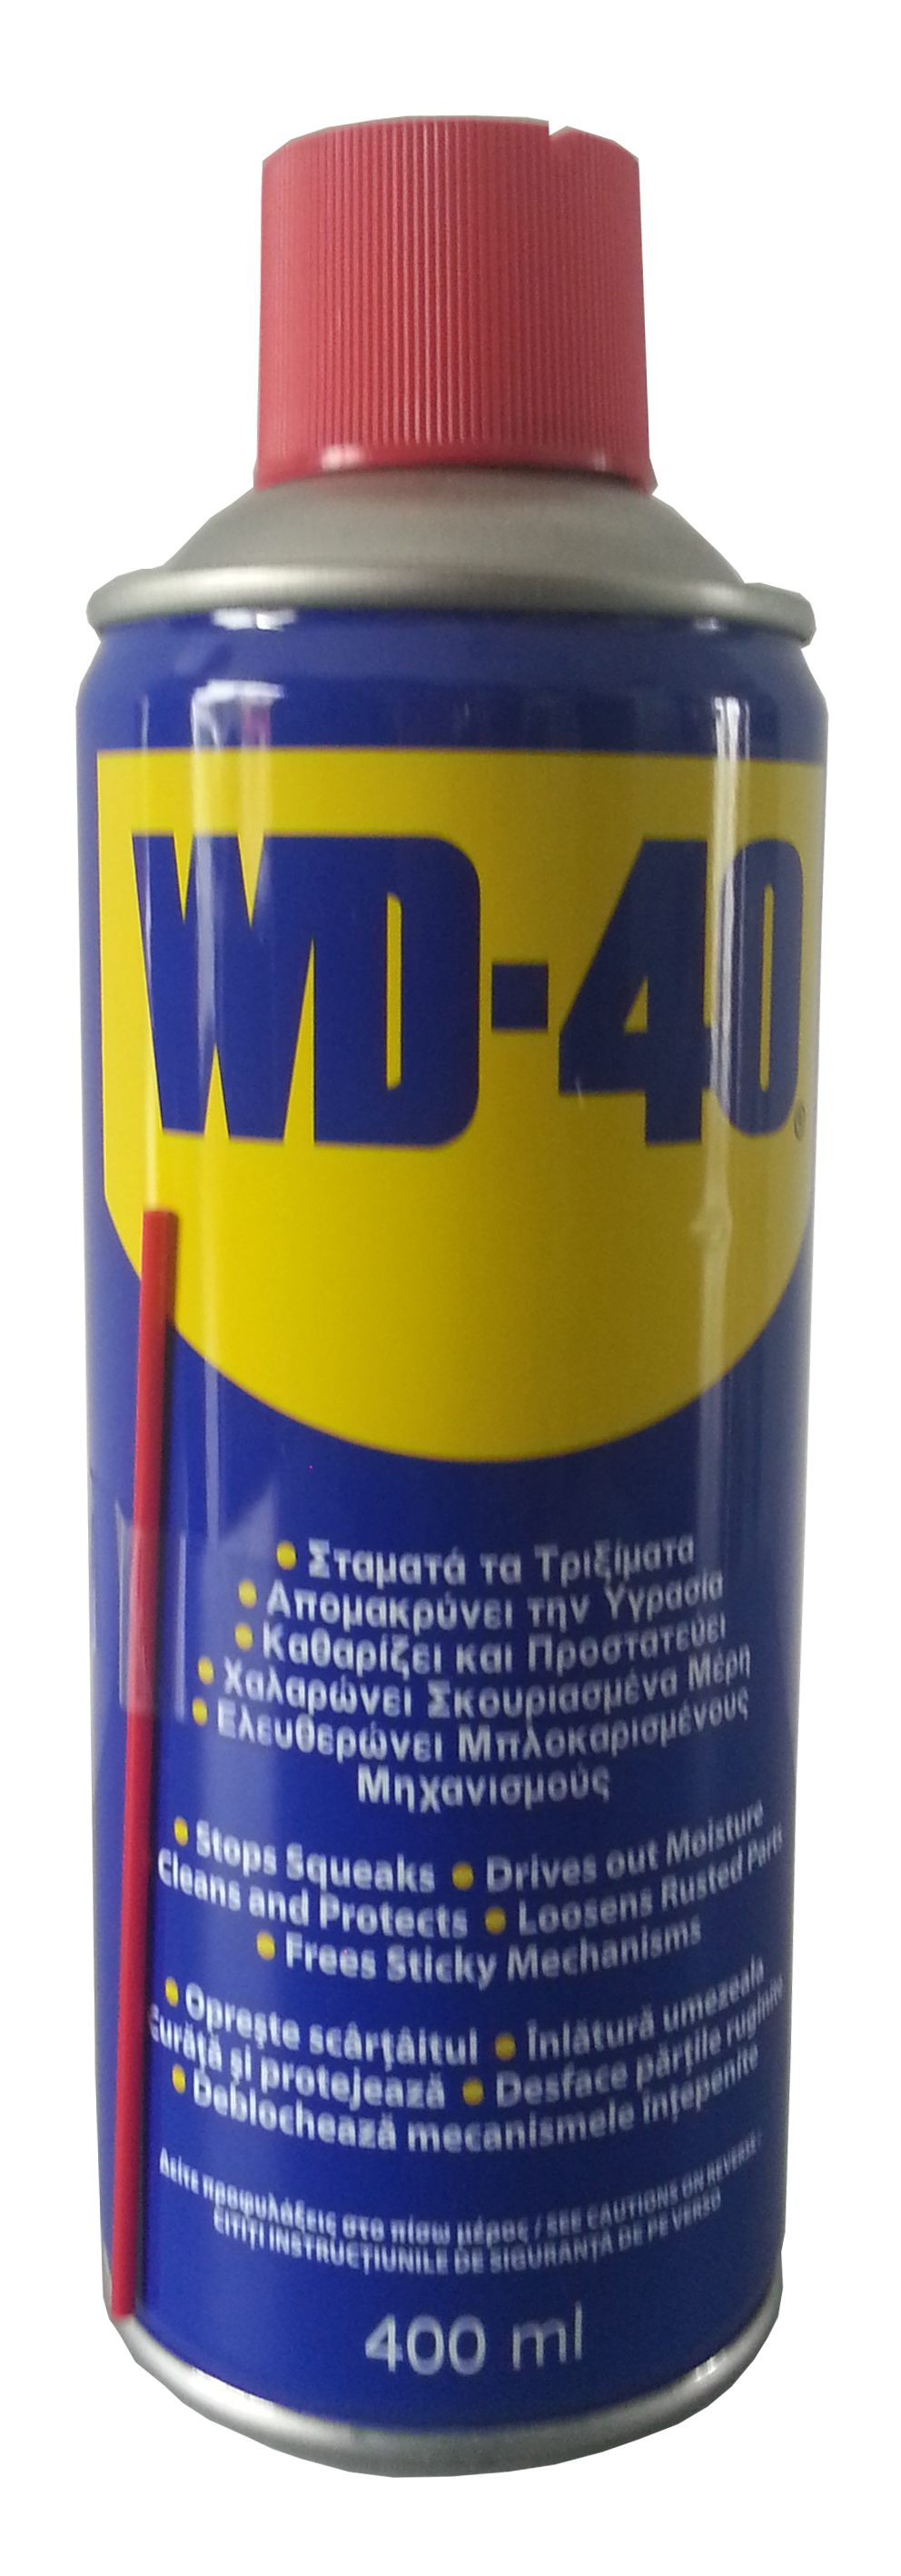 WD40.jpg